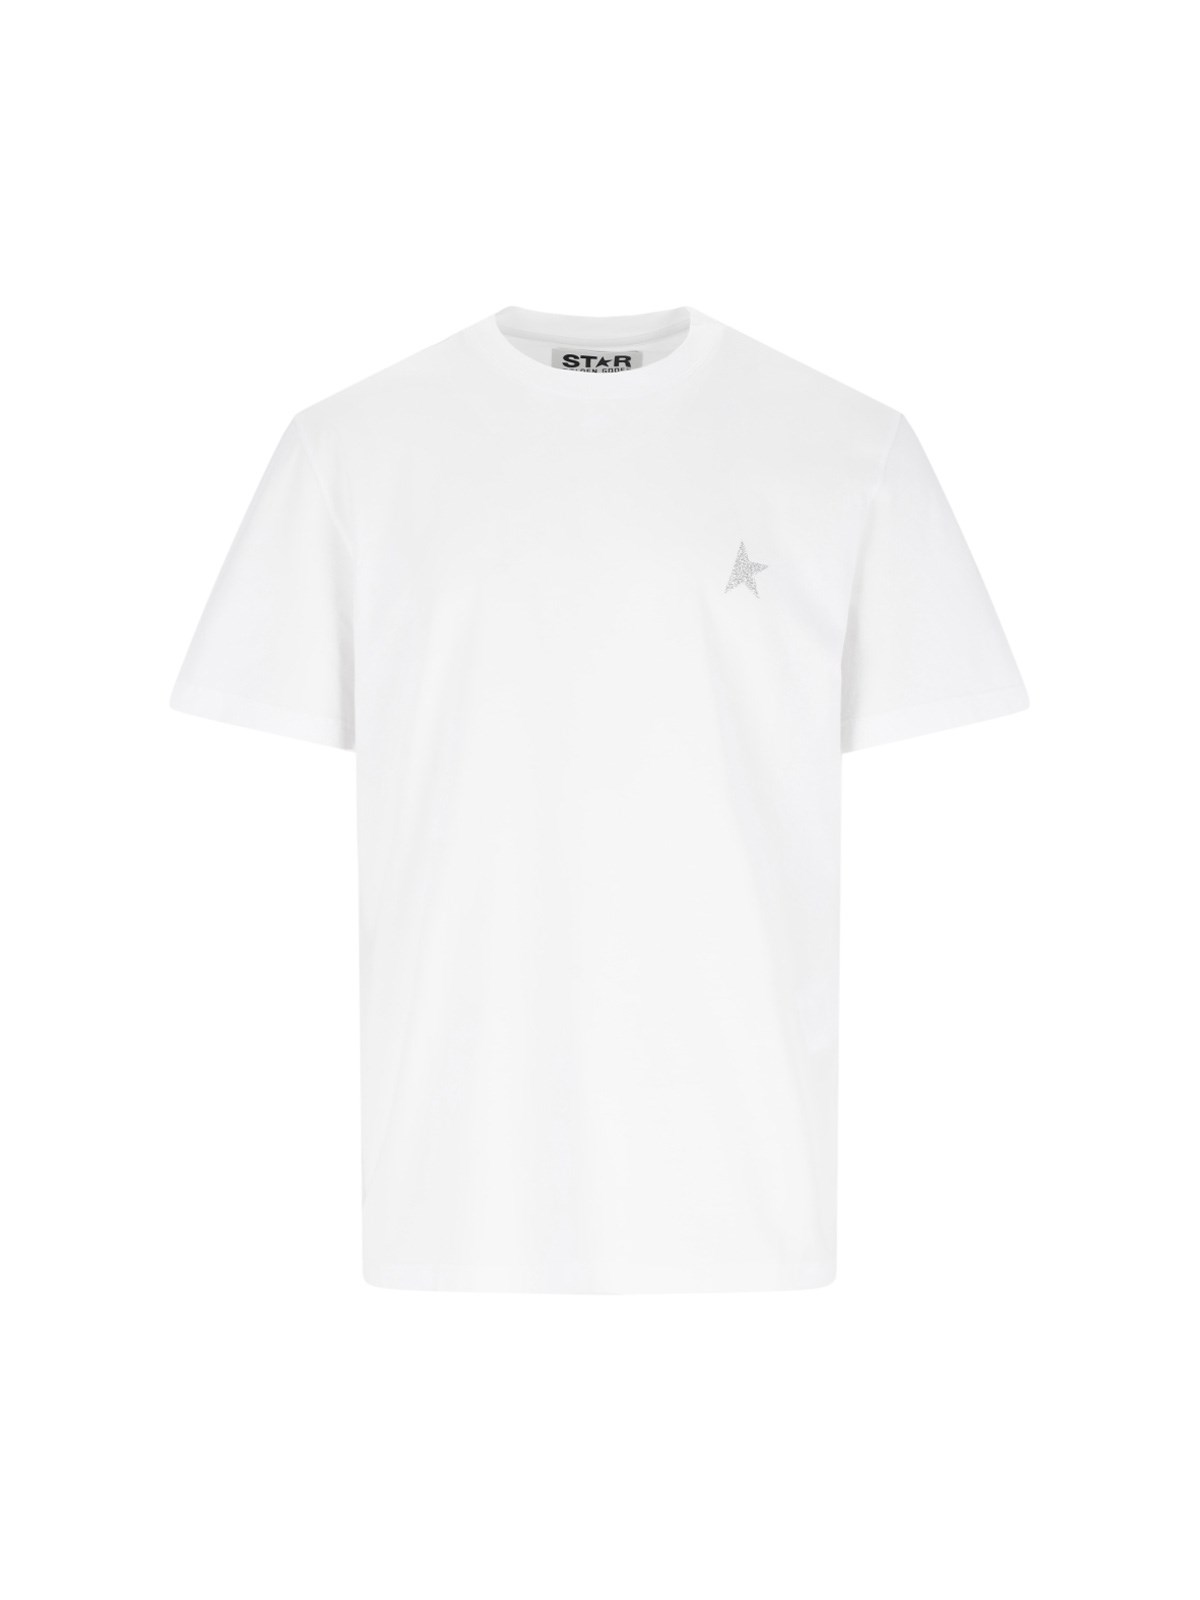 Golden Goose "star" Logo T-shirt In White